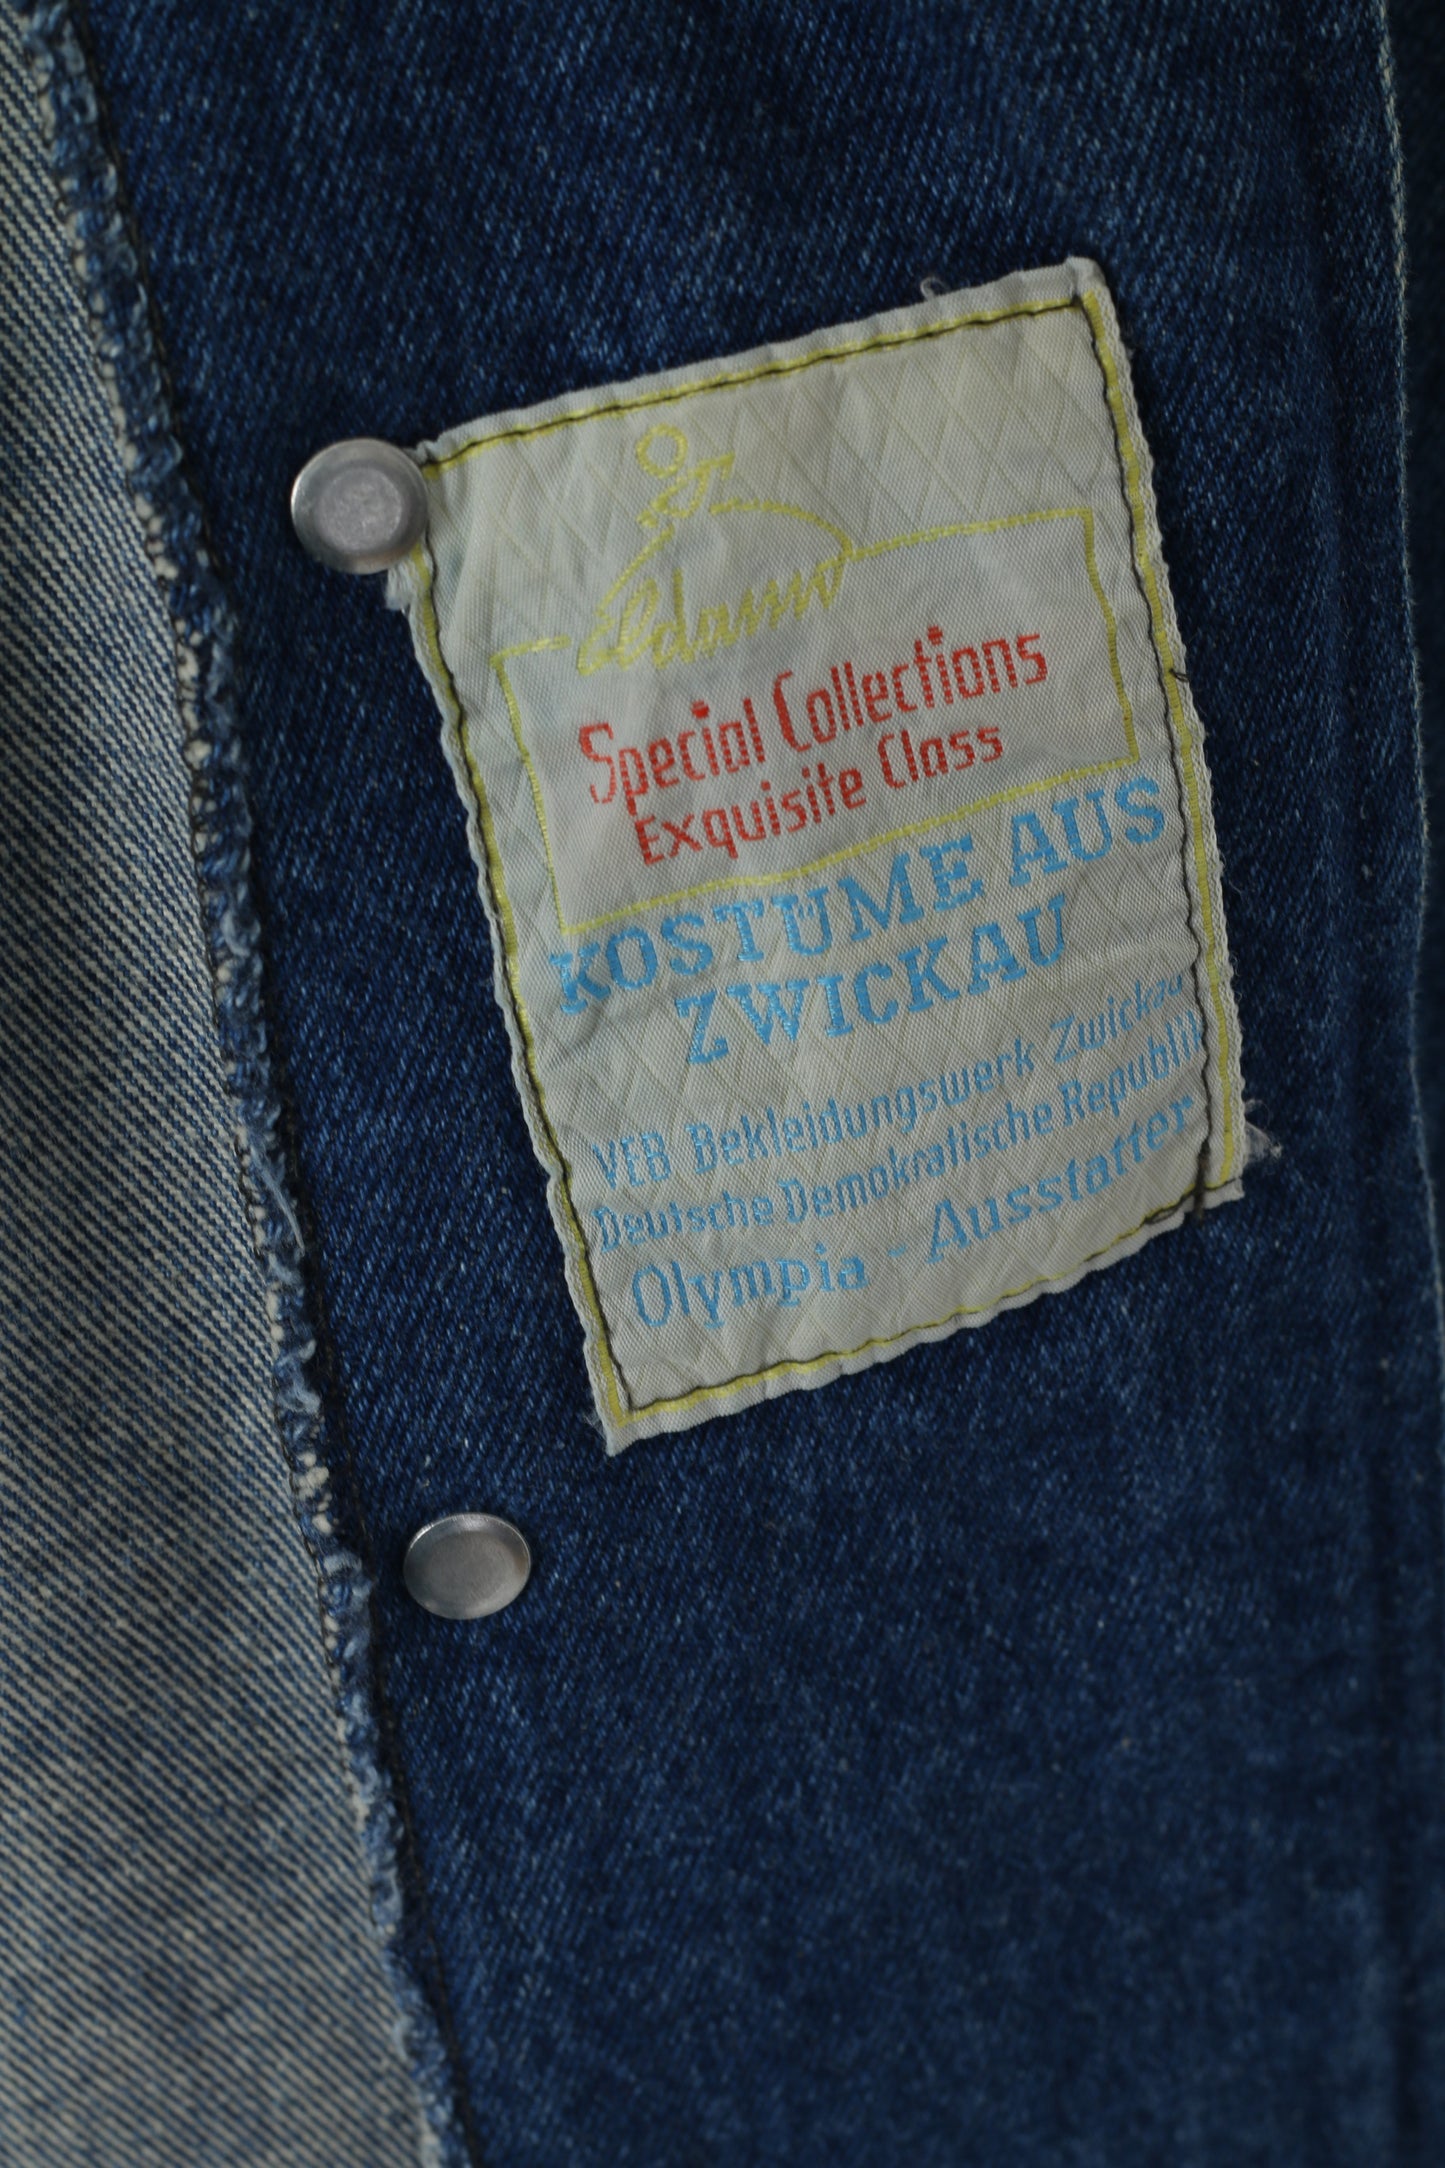 Special Collections Exquisite Class Women M 94 Jacket Denim Jeans Cotton Vintage